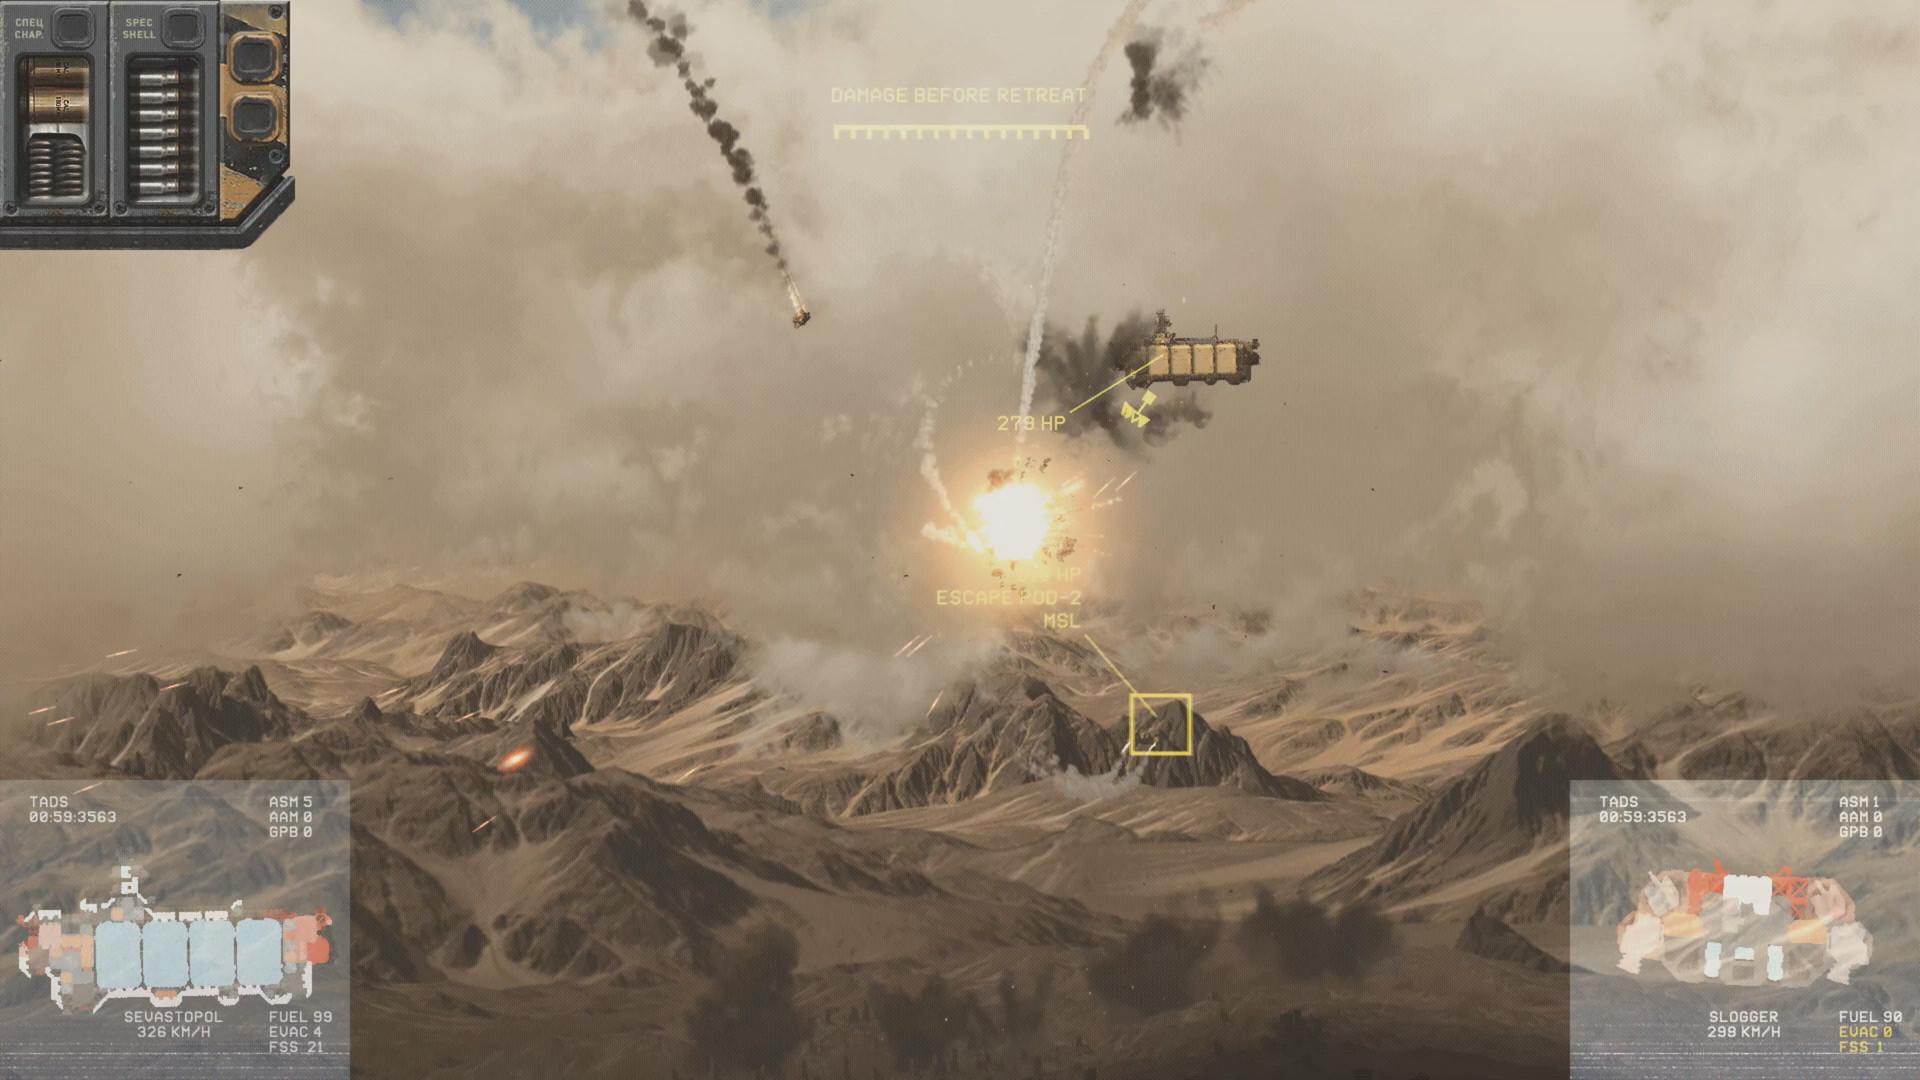 Screenshot №1 from game HighFleet